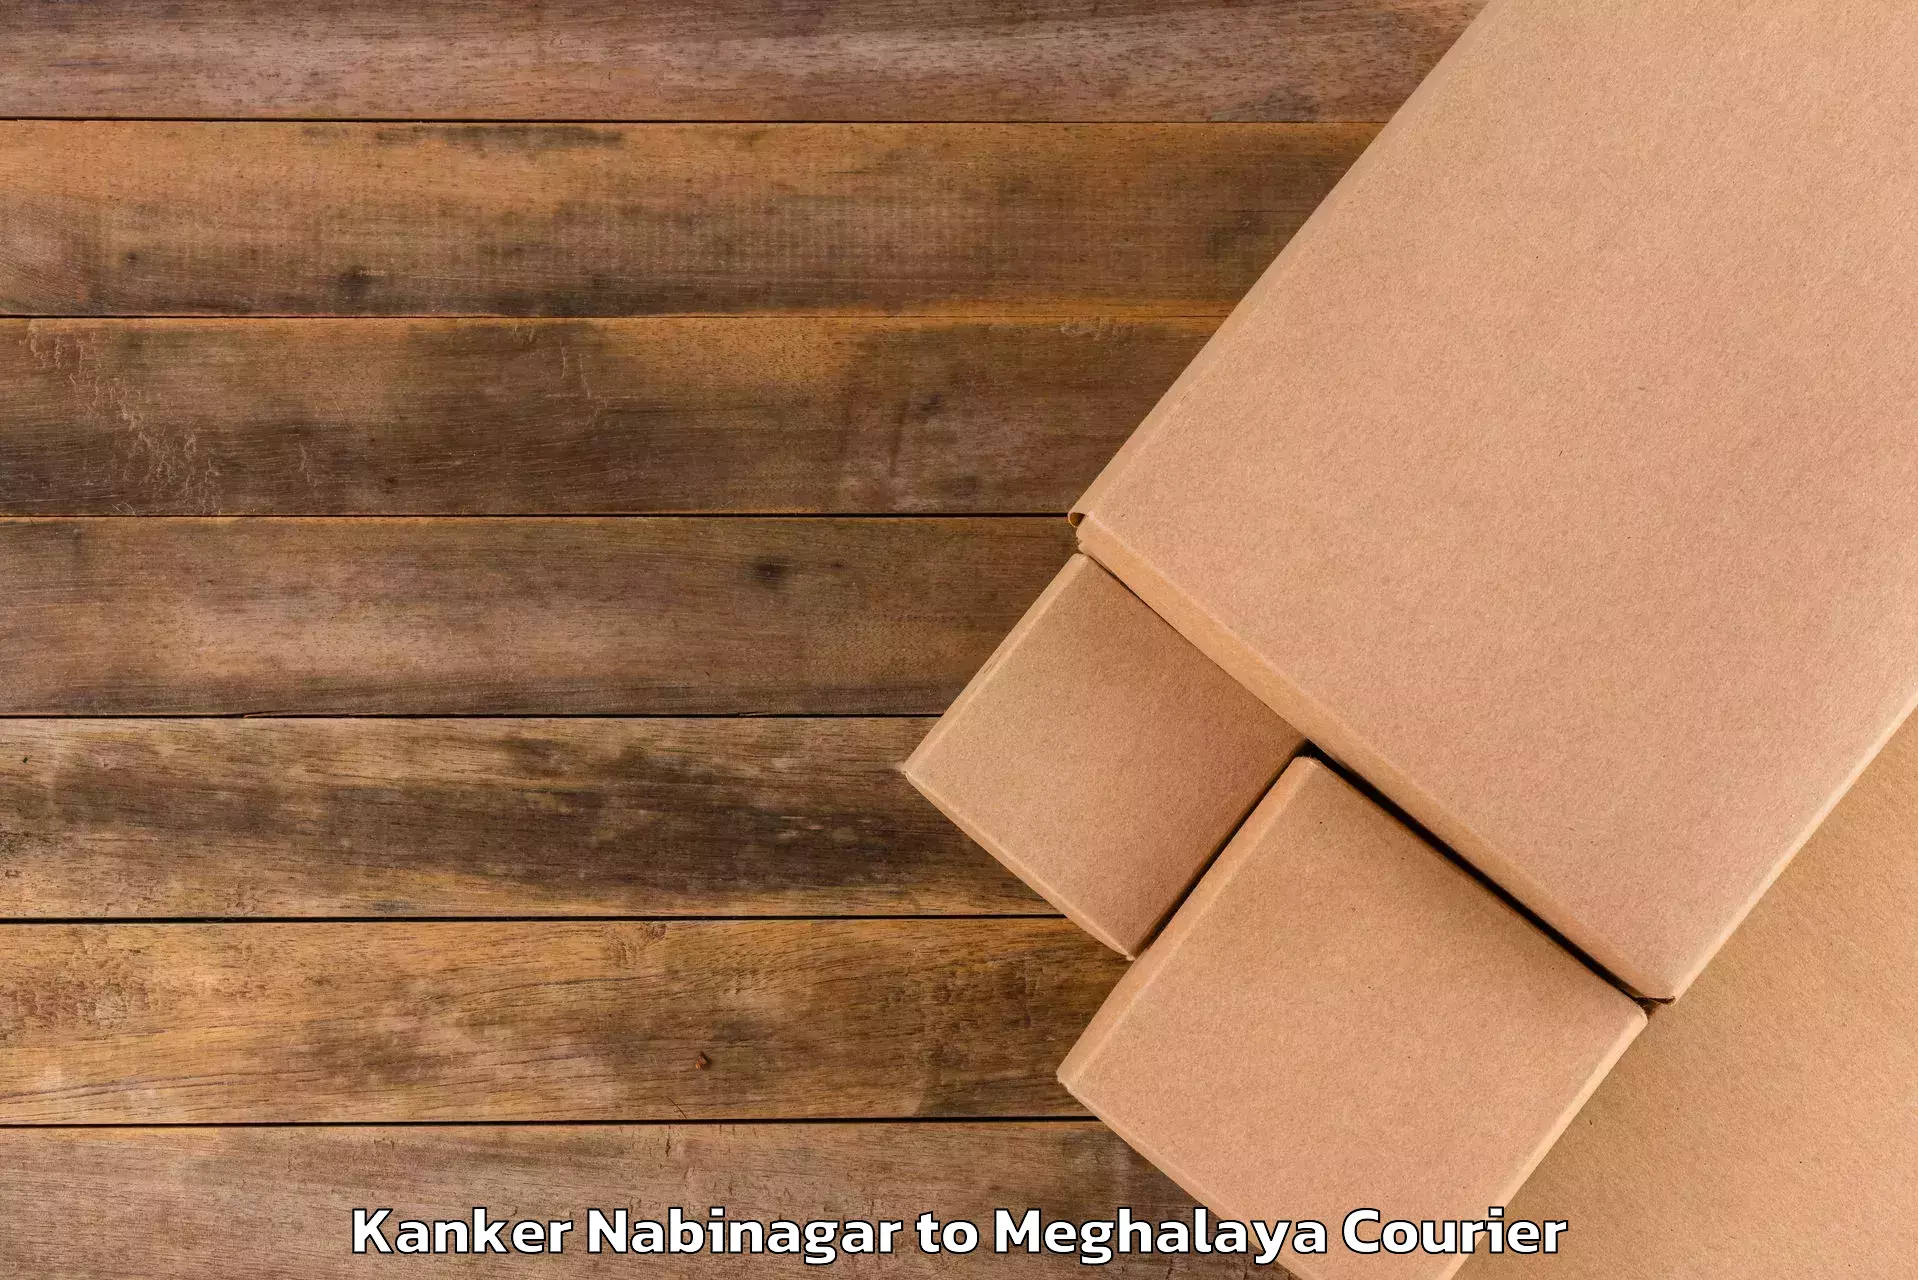 Luggage transport consulting Kanker Nabinagar to Meghalaya